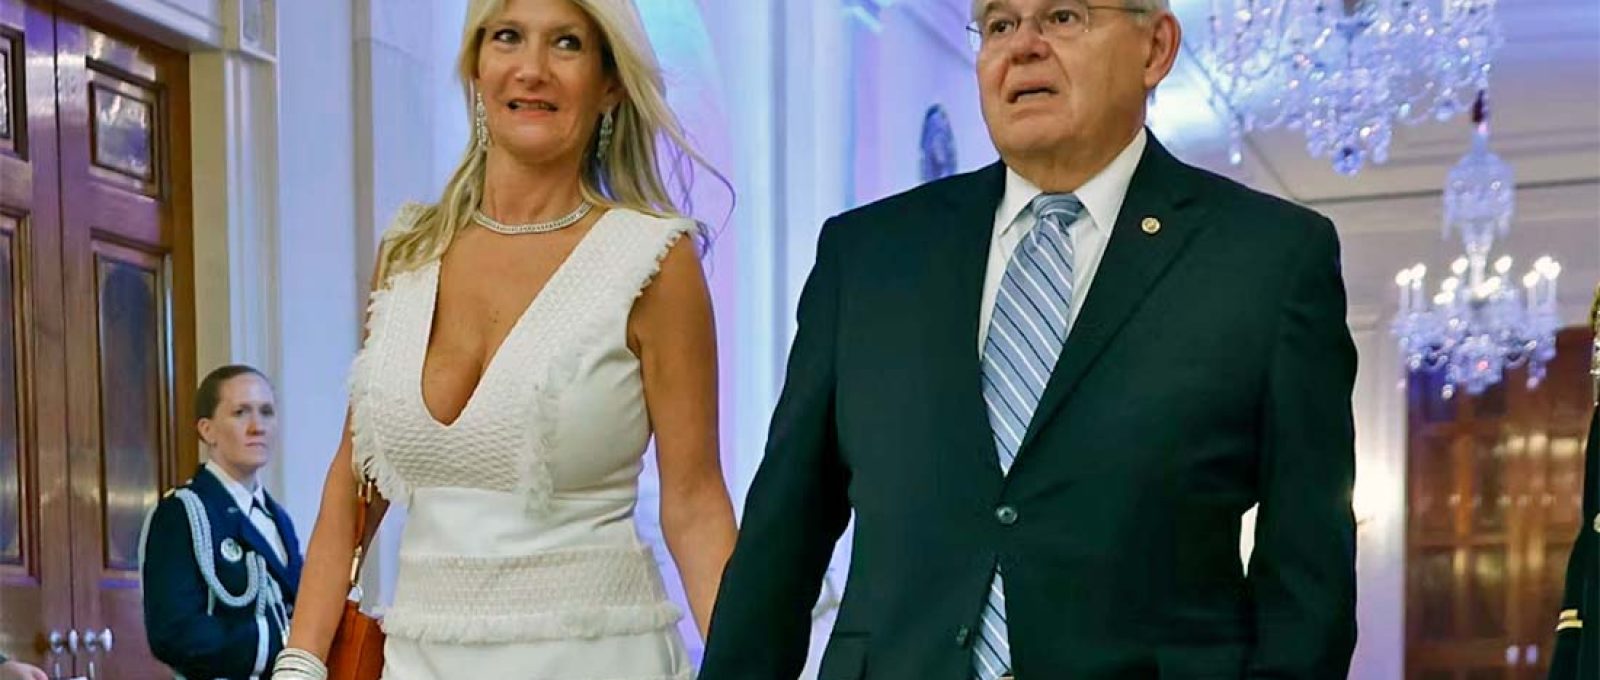 O senador americano Bob Menendez e sua esposa, Nadine Arslanian, chegam para uma recepção na Casa Branca em 16 de maio de 2022 (Chip Somodevilla/Getty Images).